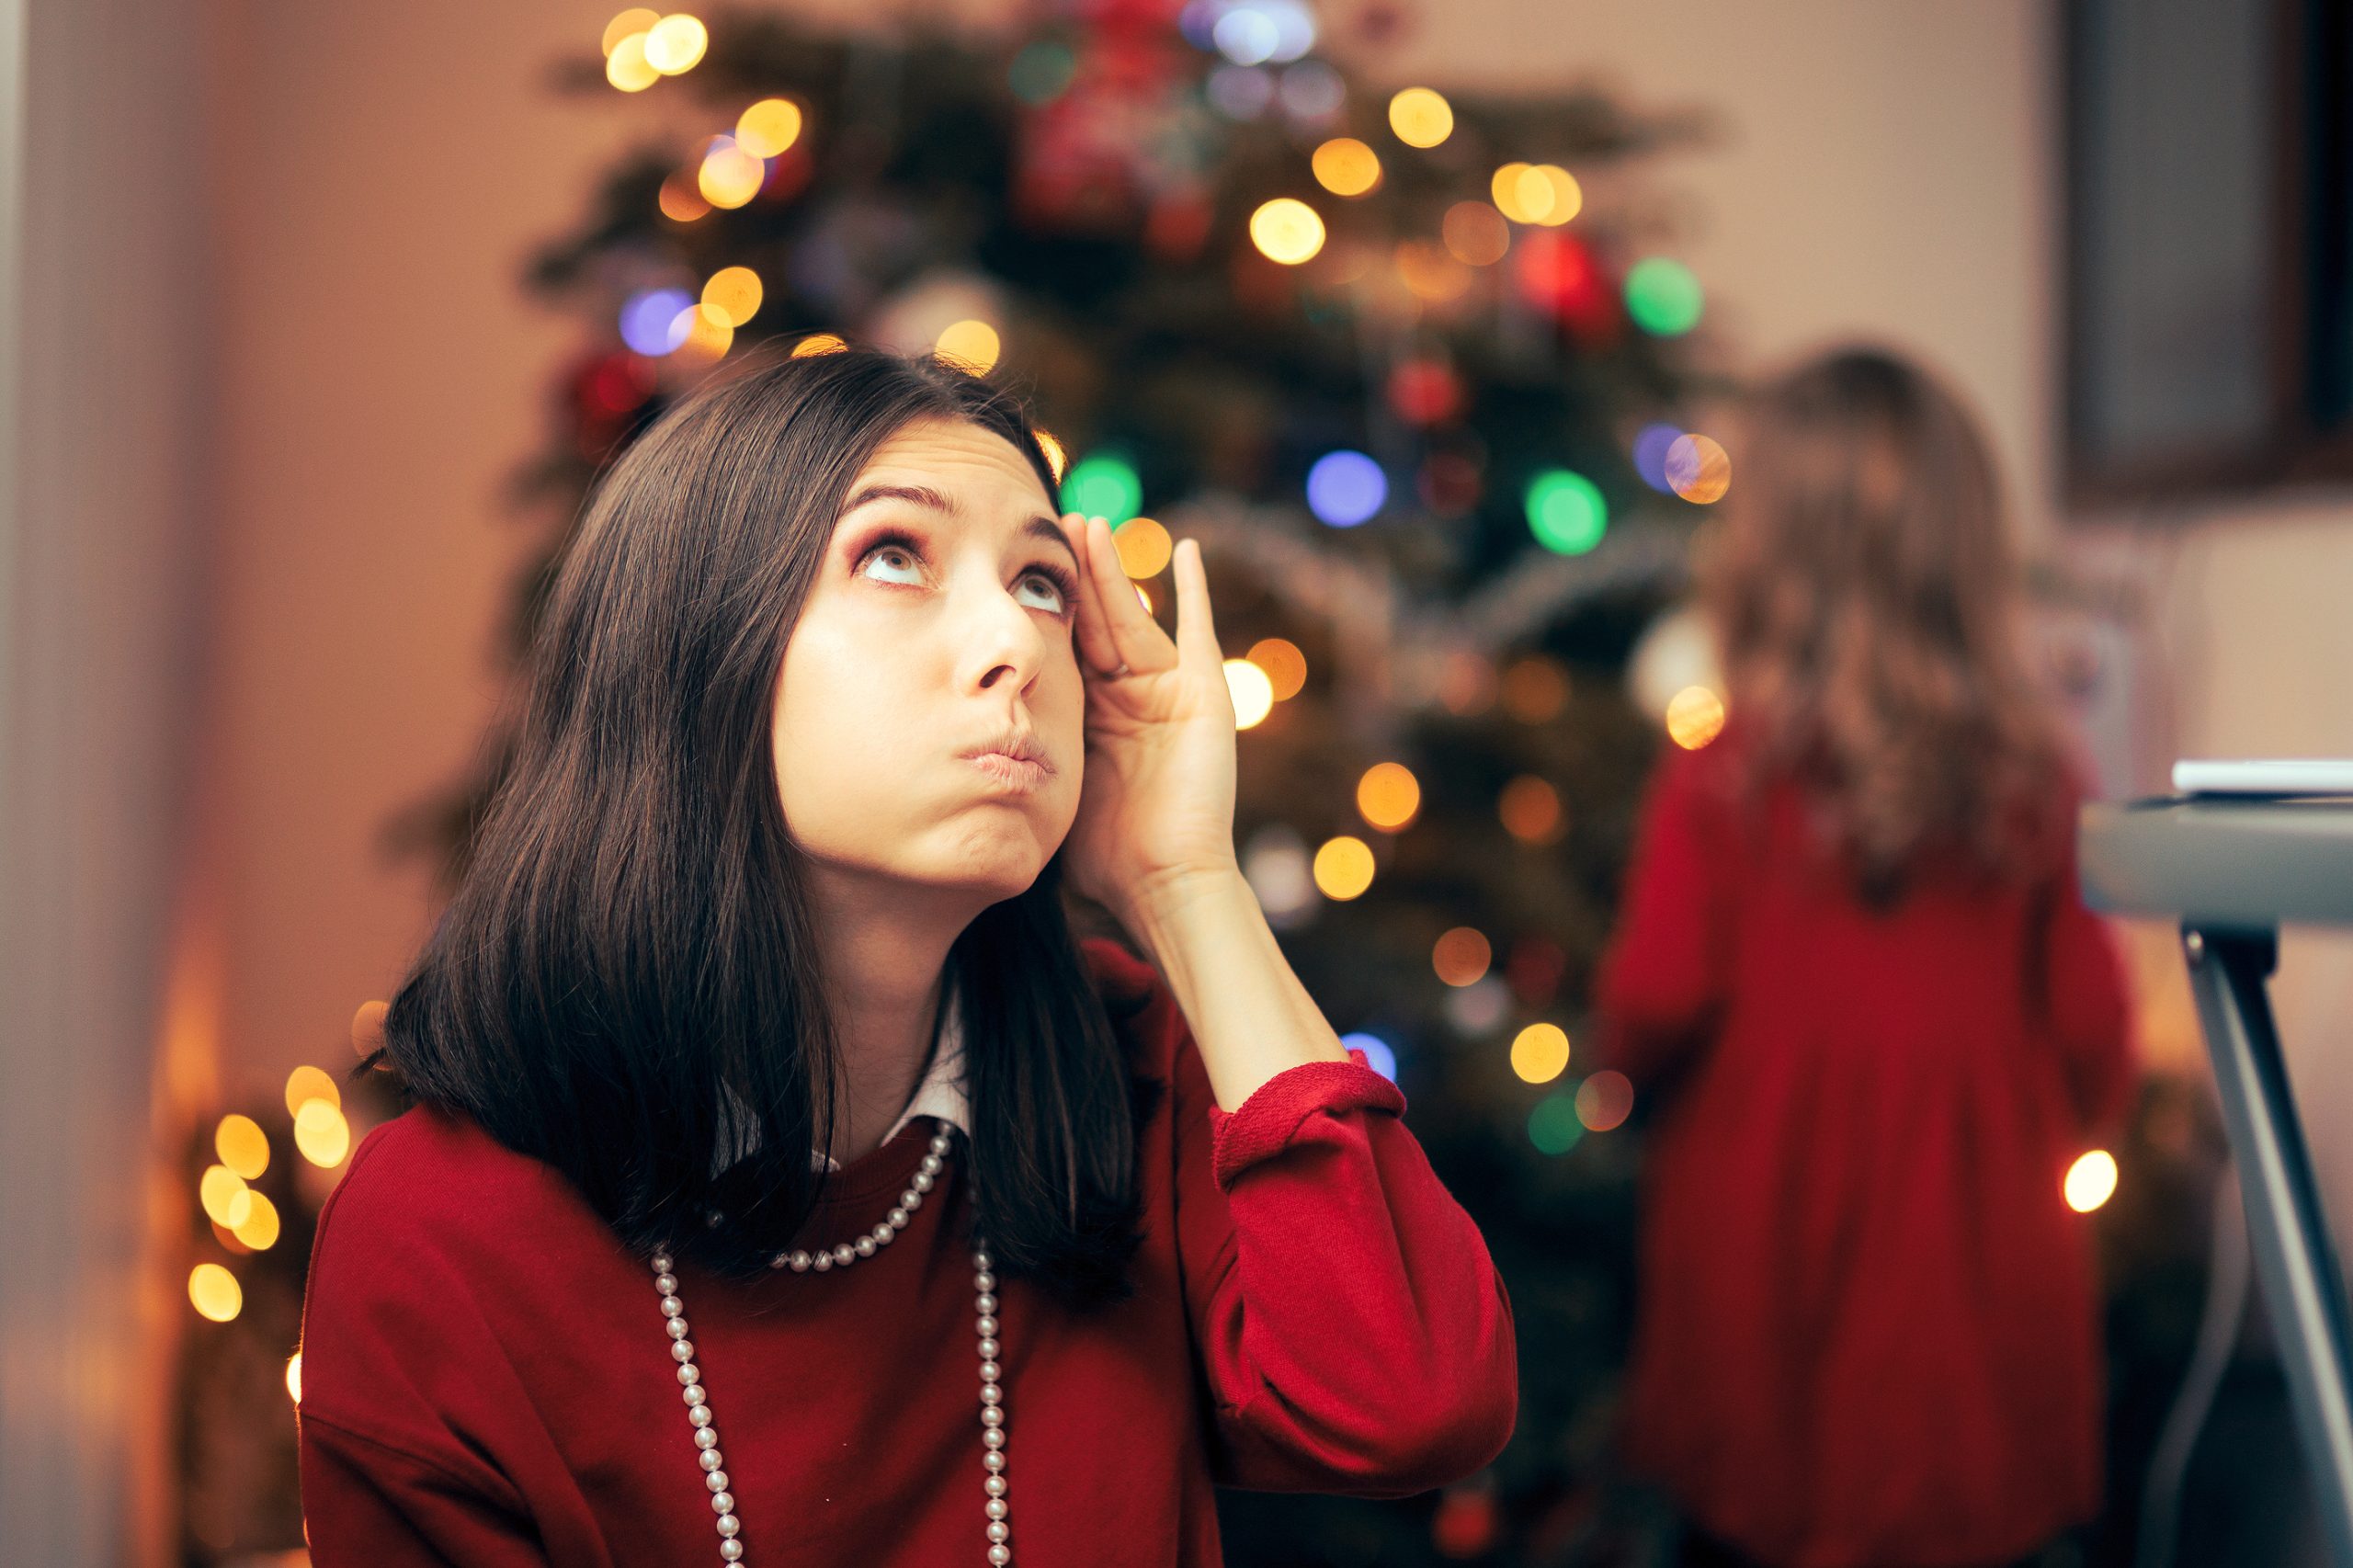 Familias con niños: ¿Cómo reducir el estrés en Navidad?